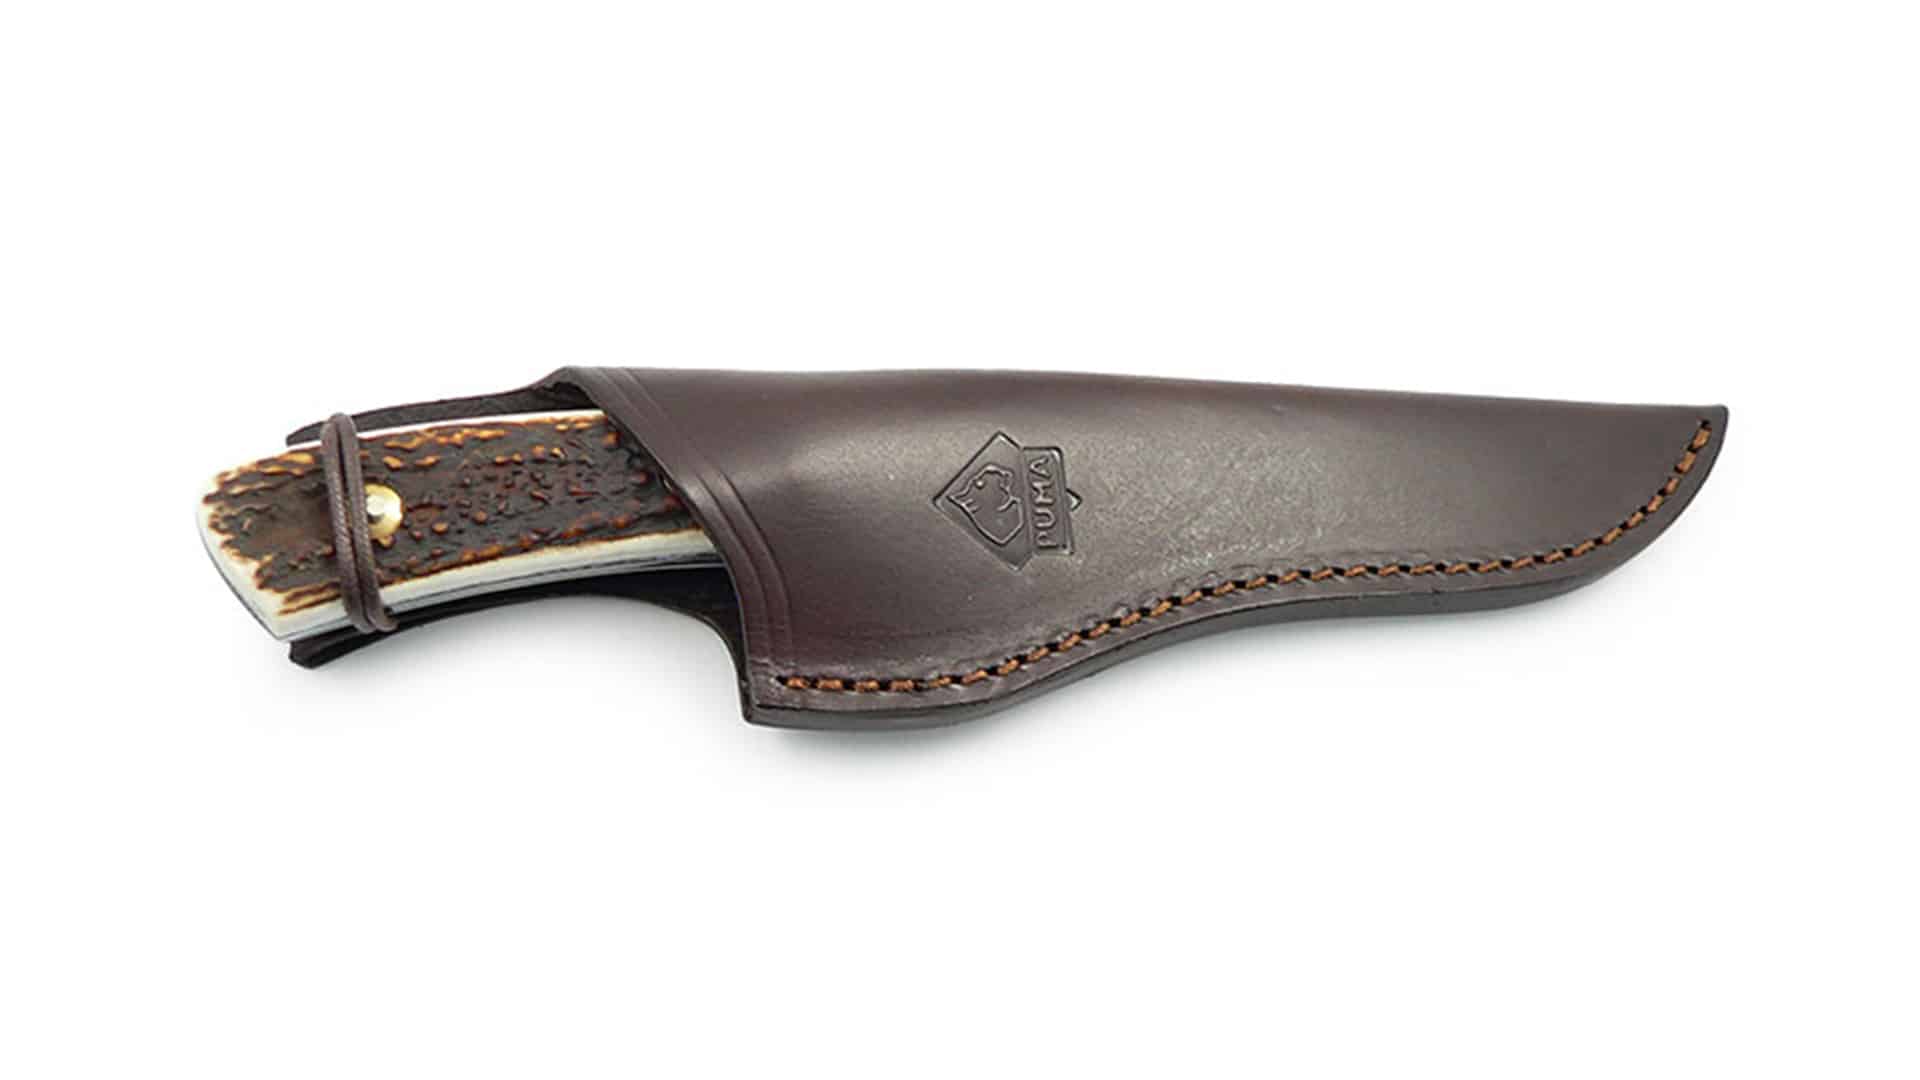 Puma deer knife leather sheath